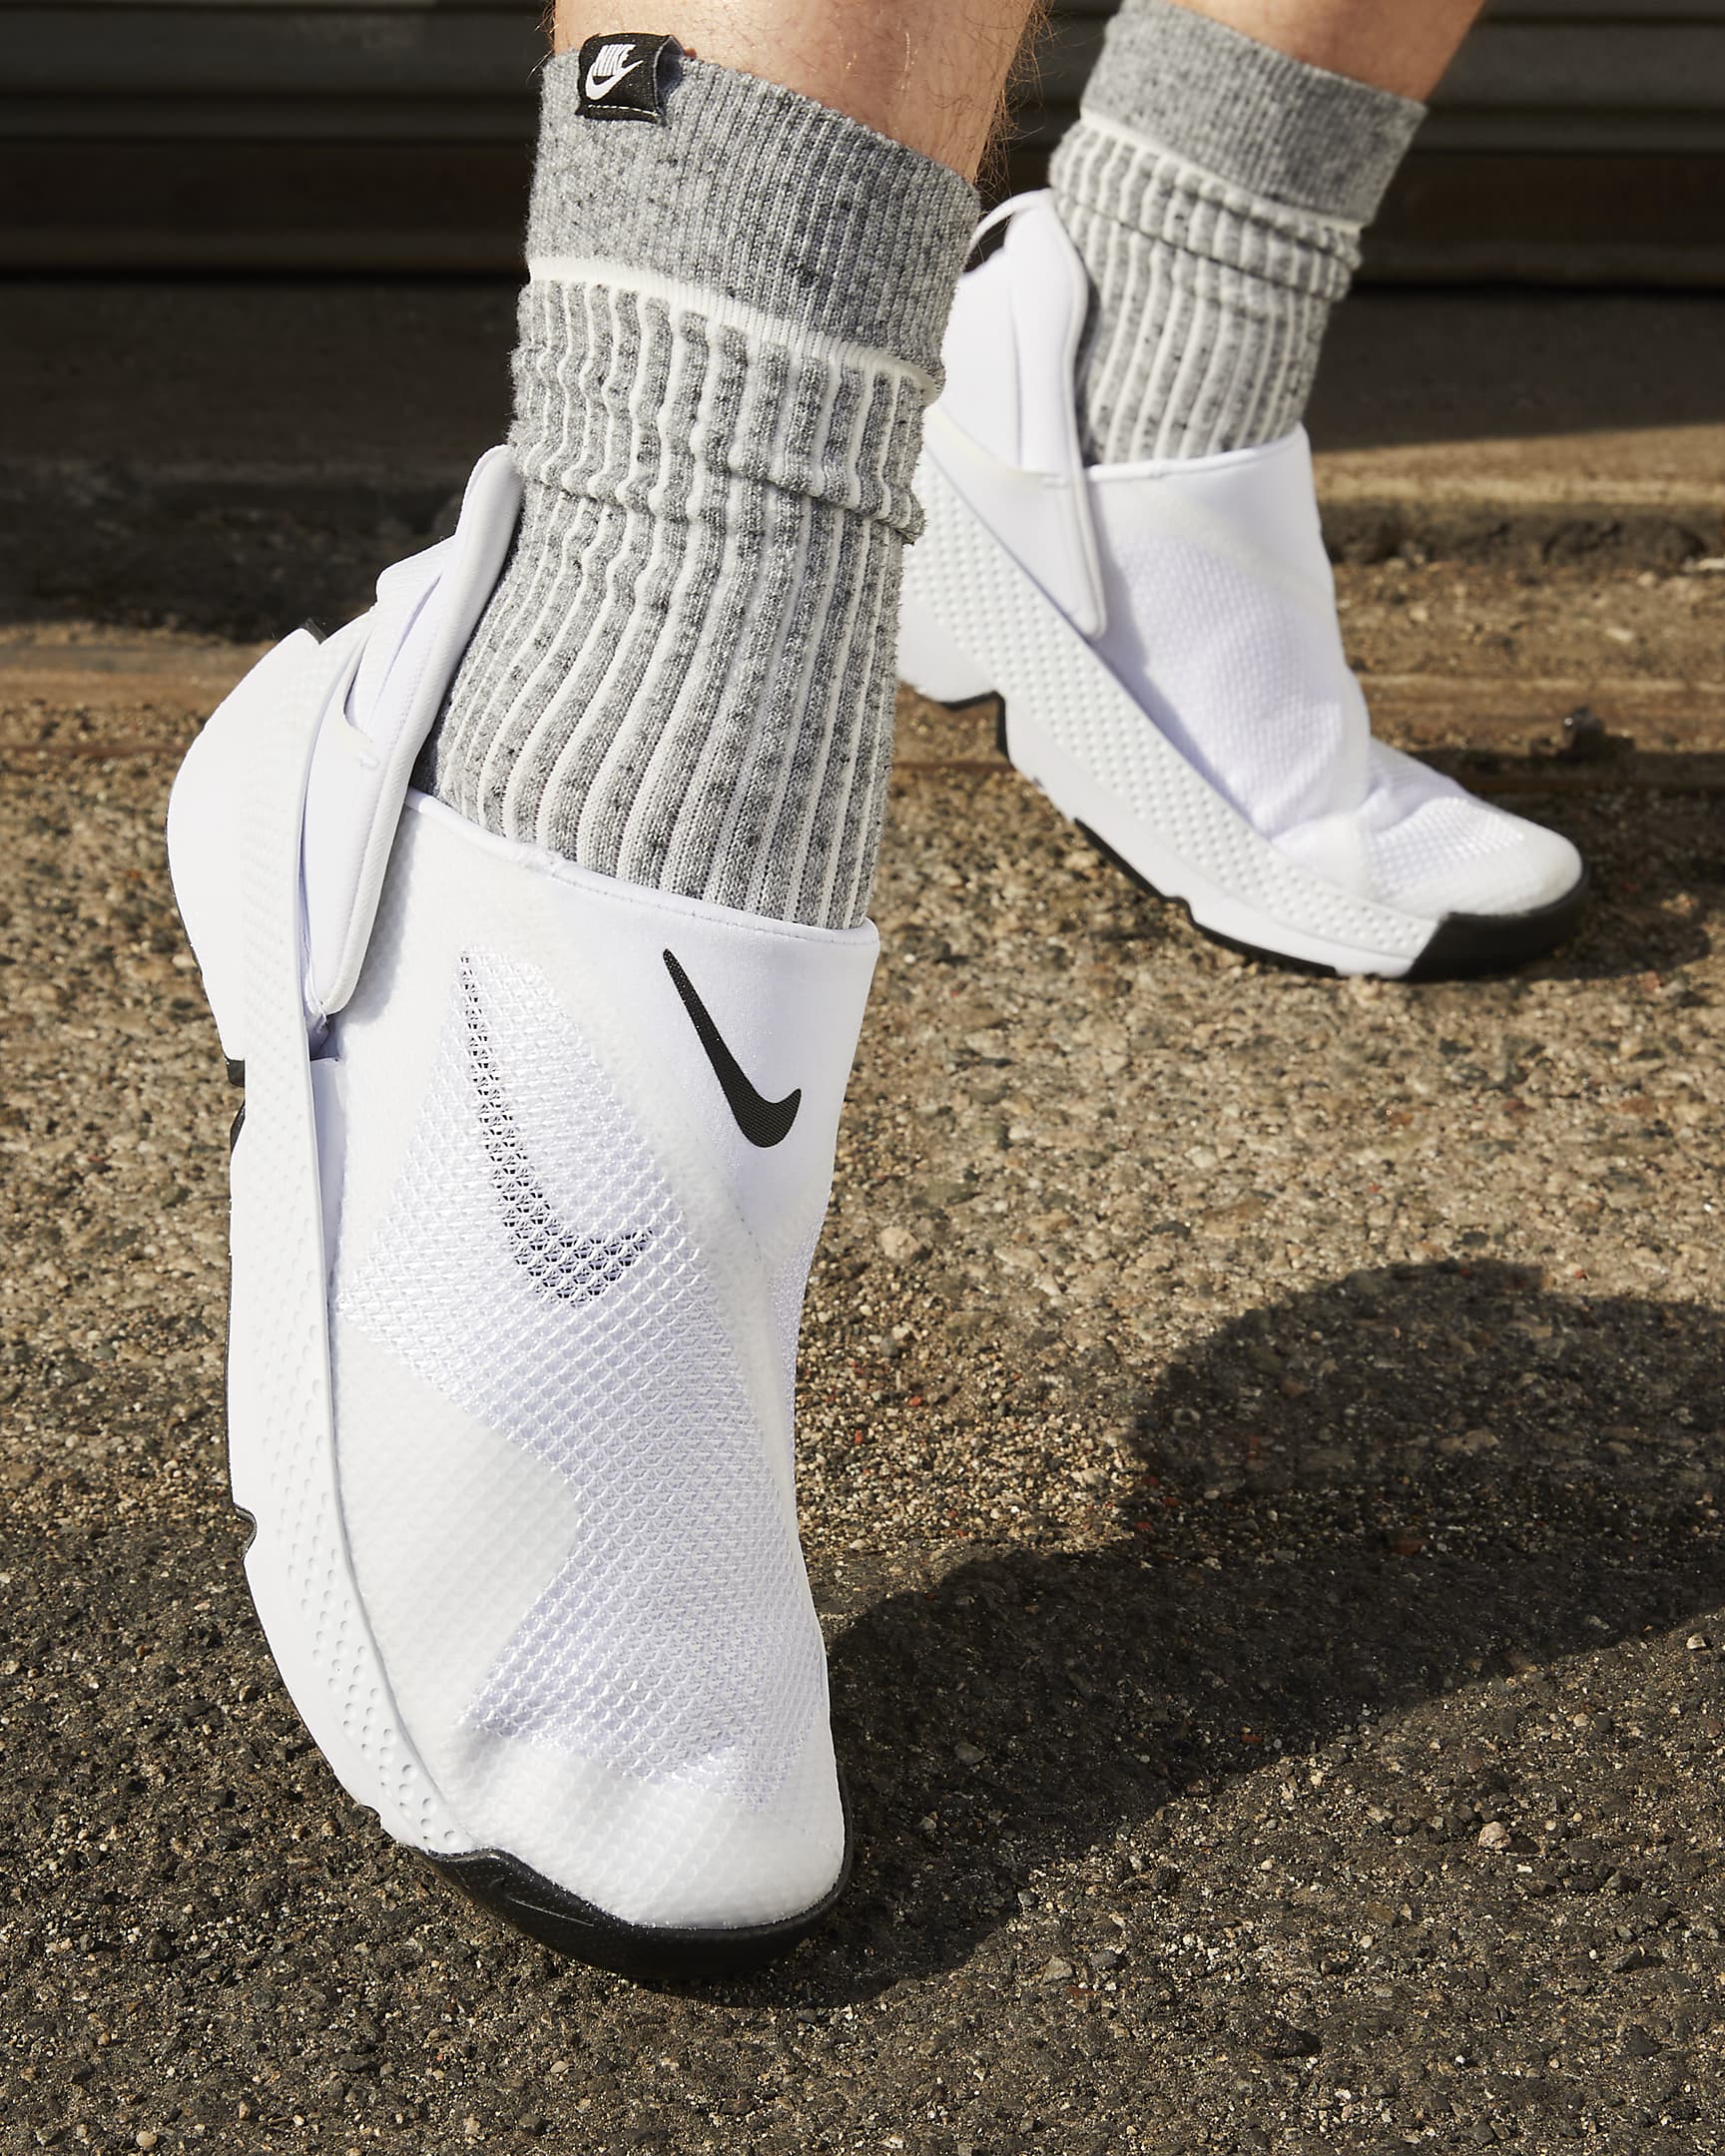 Chaussure facile à enfiler et à retirer Nike Go FlyEase - Blanc/Noir